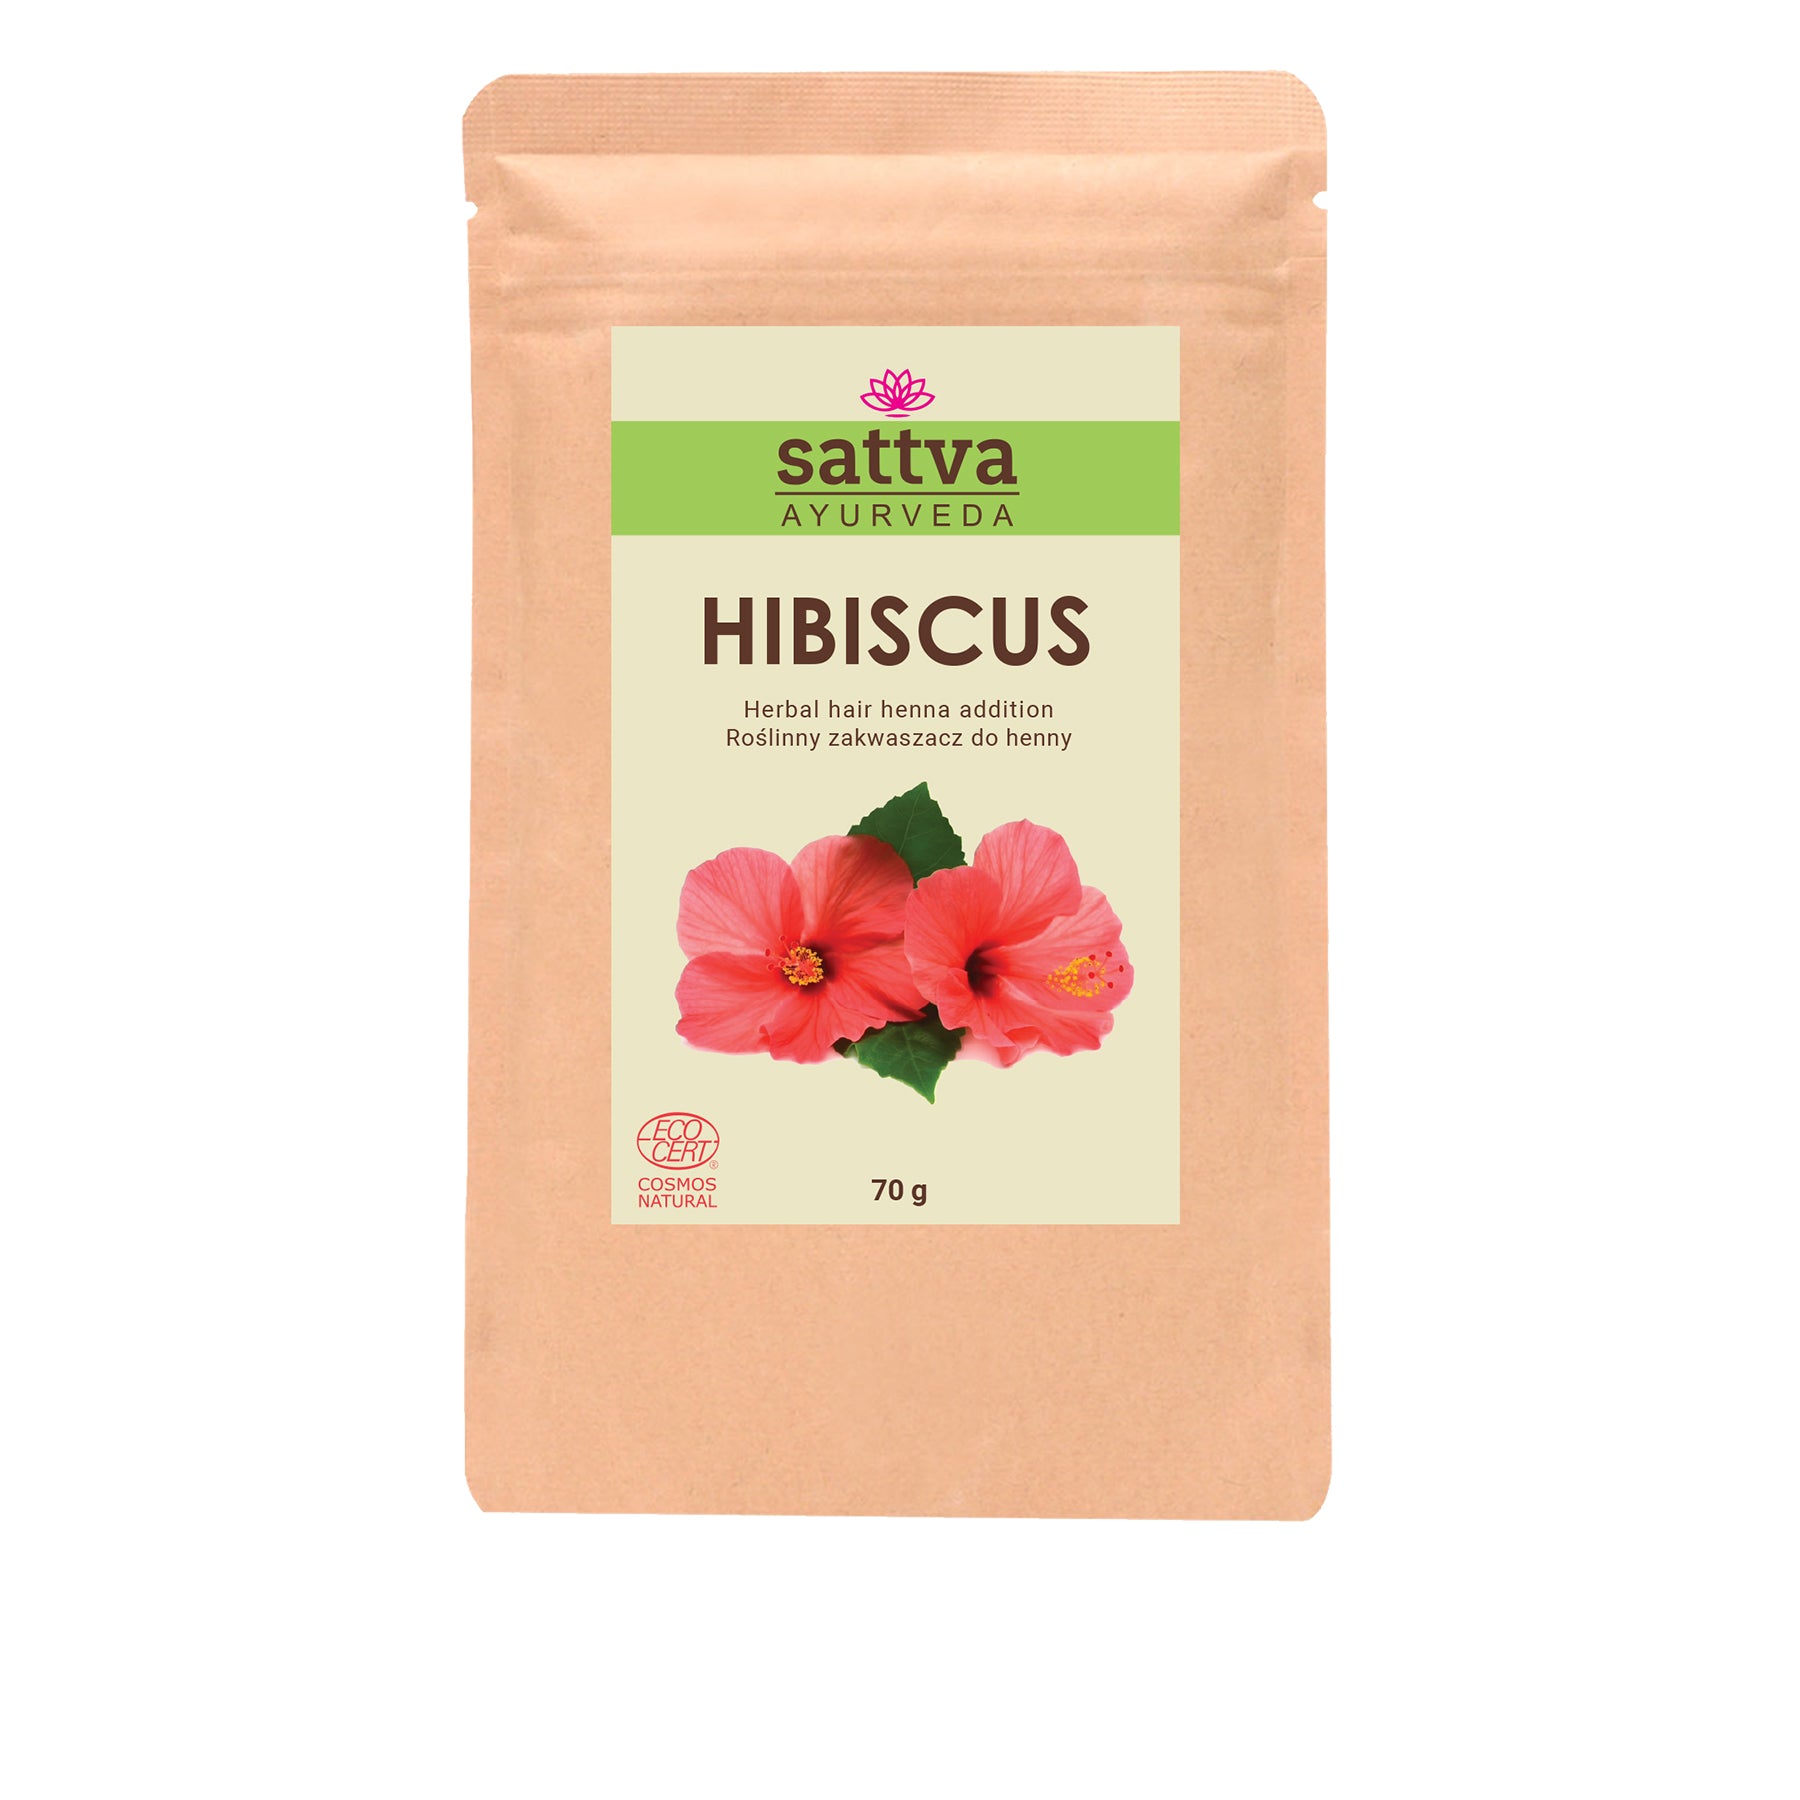 Complemento Capilar Herbal de Hibisco para Coloración con Henna